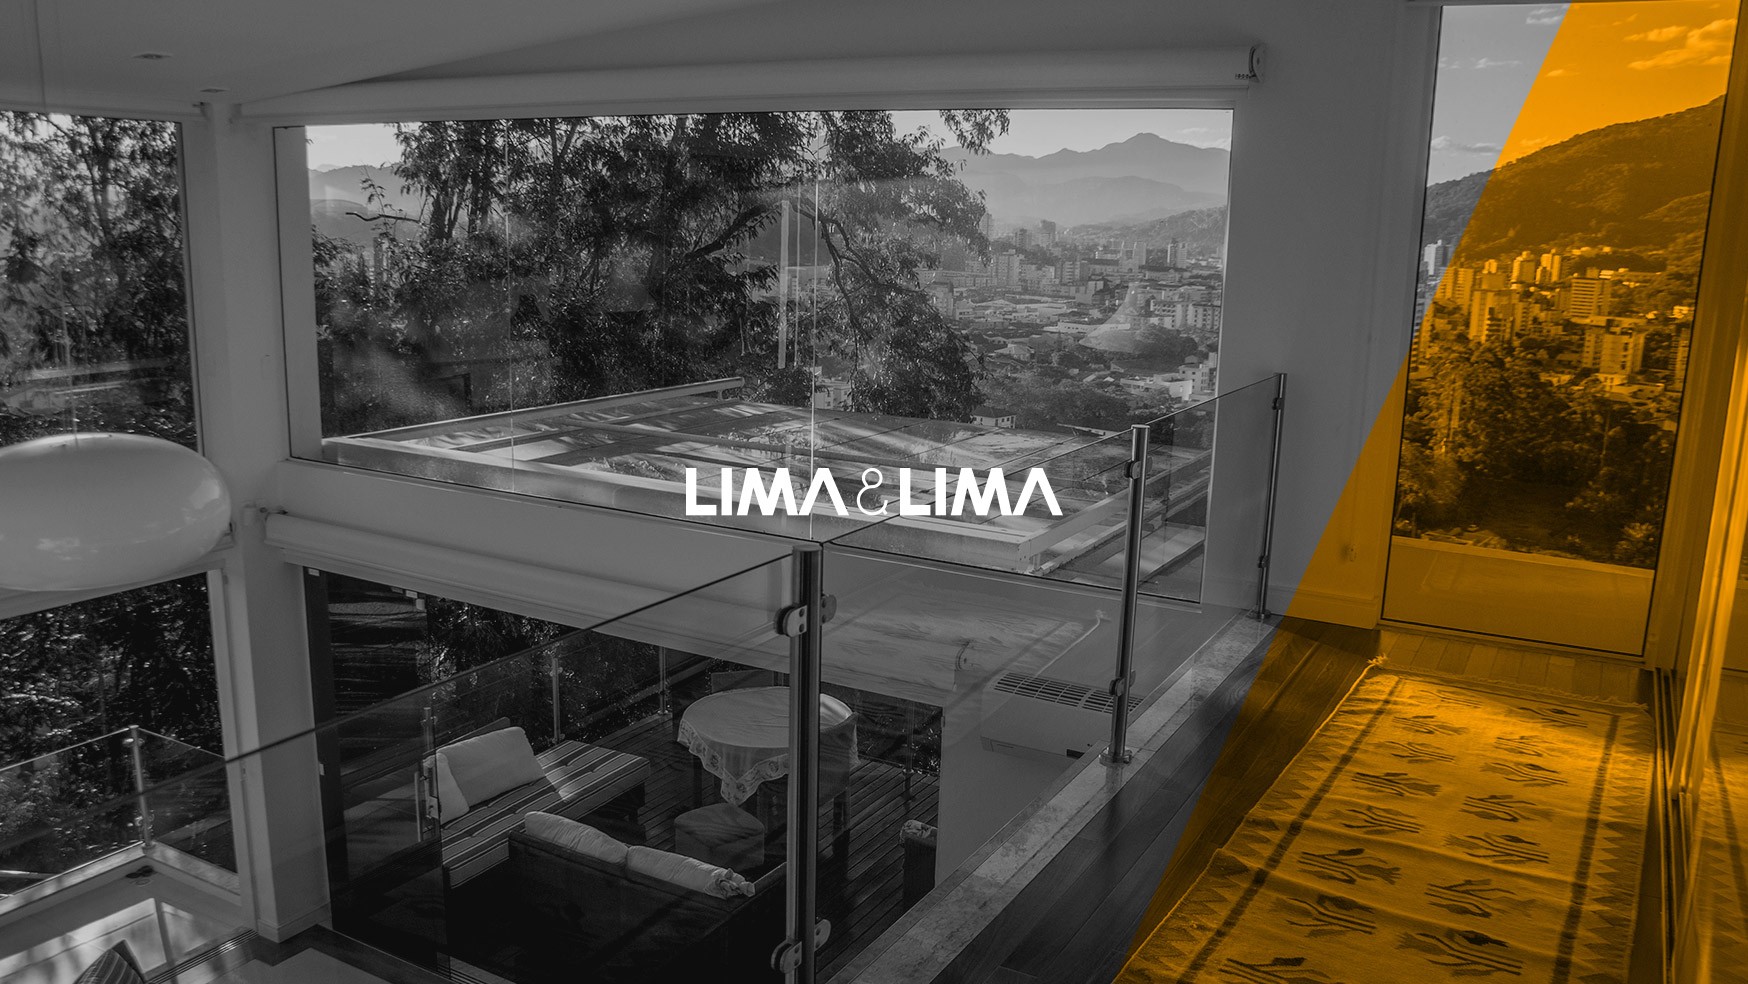 Lima & Lima